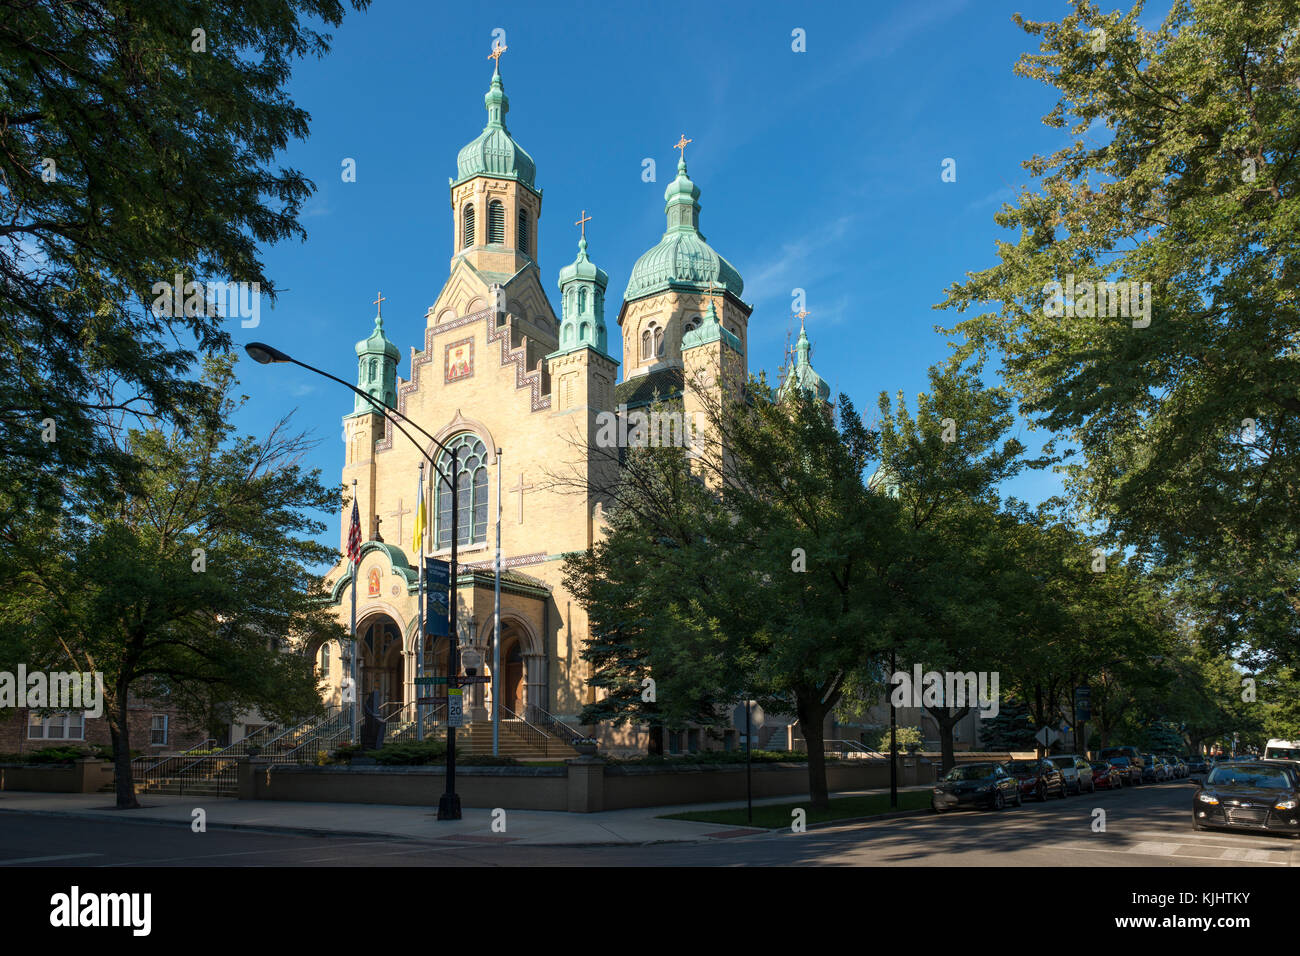 La chiesa di San Nicola in Chicago villaggio ucraino è un esempio di bizantino-slava stile architettonico. Foto Stock